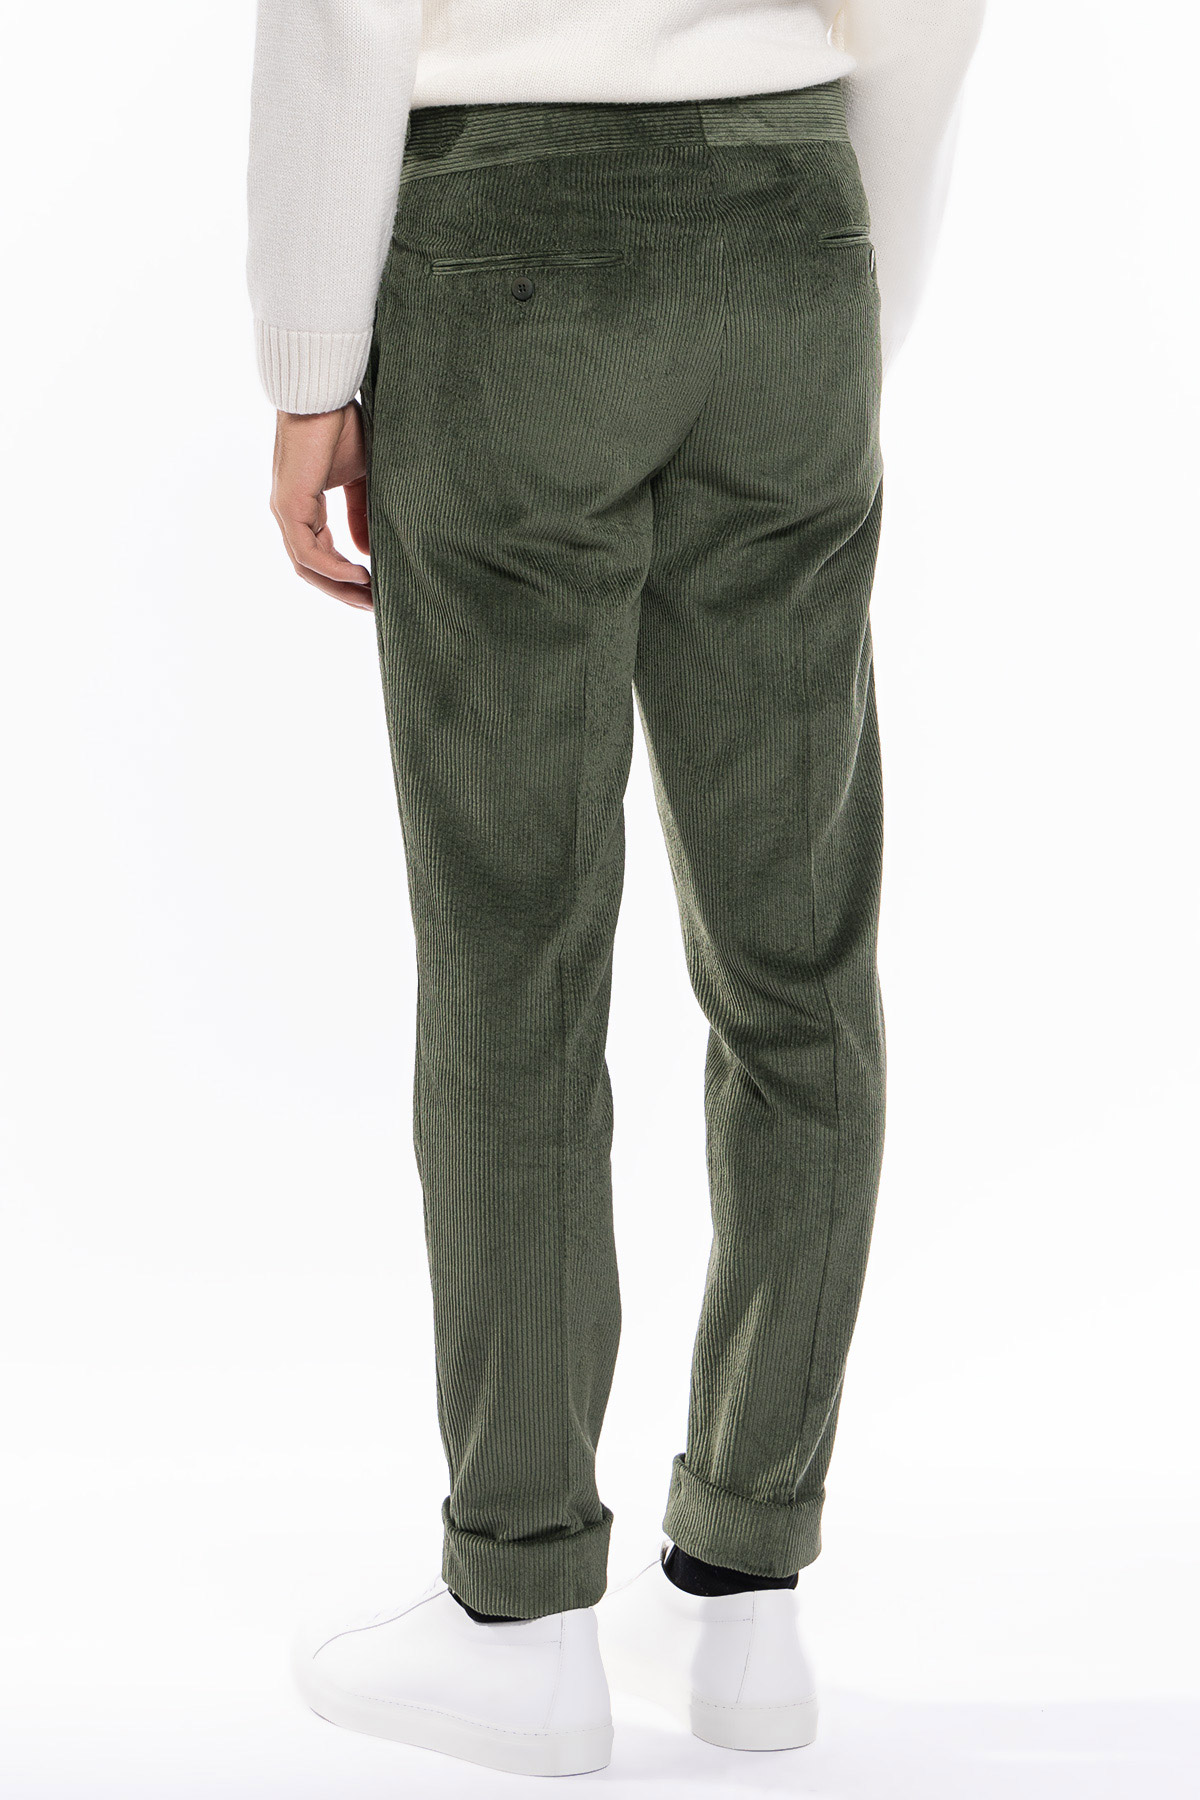 Pantalone uomo verde militare vita alta biforcato doppia pinces in velluto a costine strette